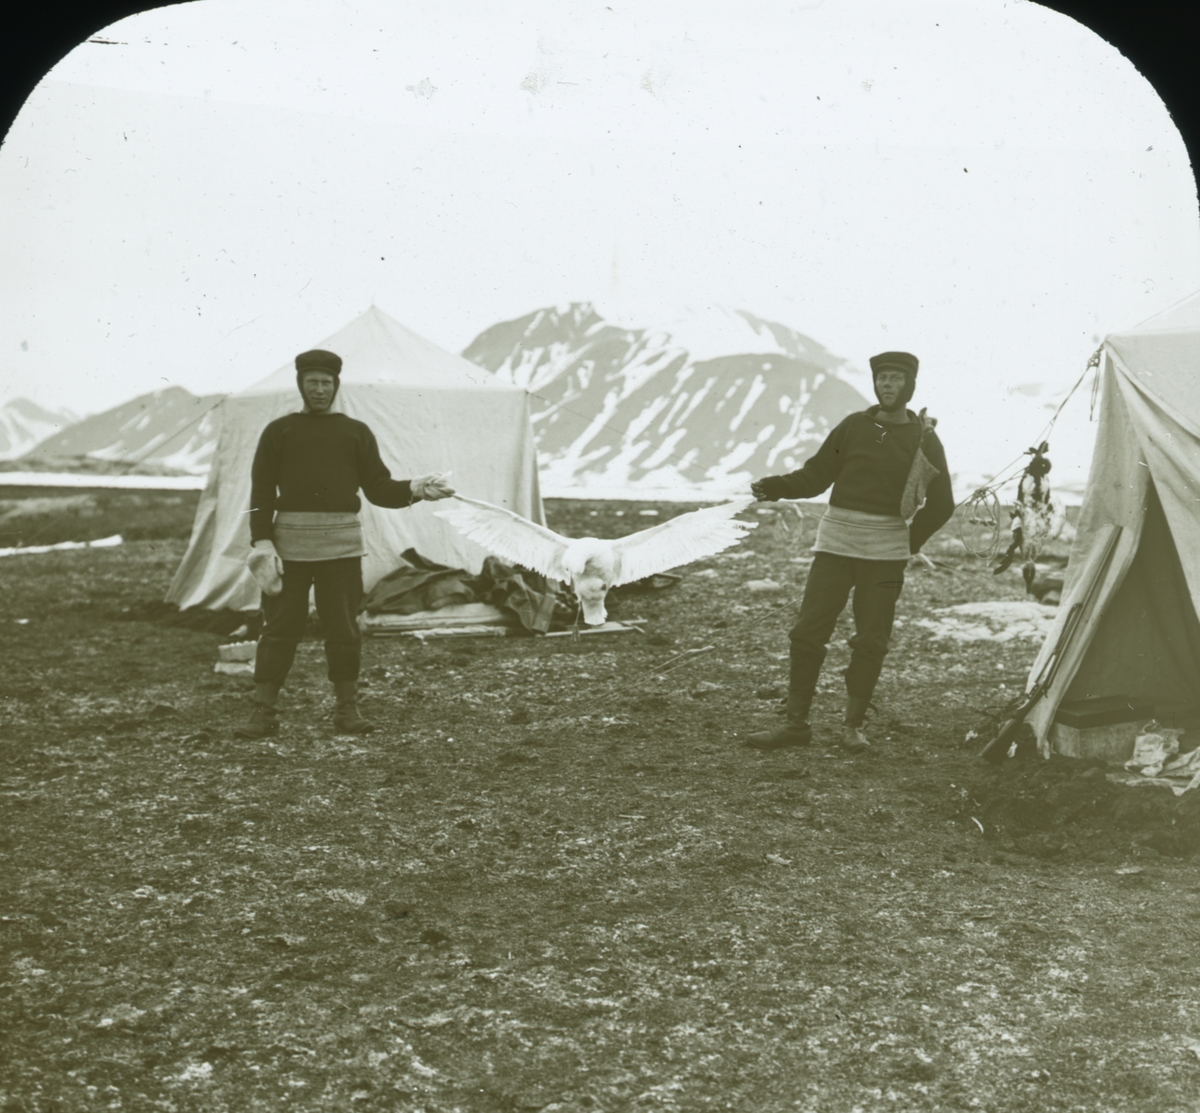 Fotografi från expedition till Spetsbergen. Motiv av två män som håller i en vit fågel.